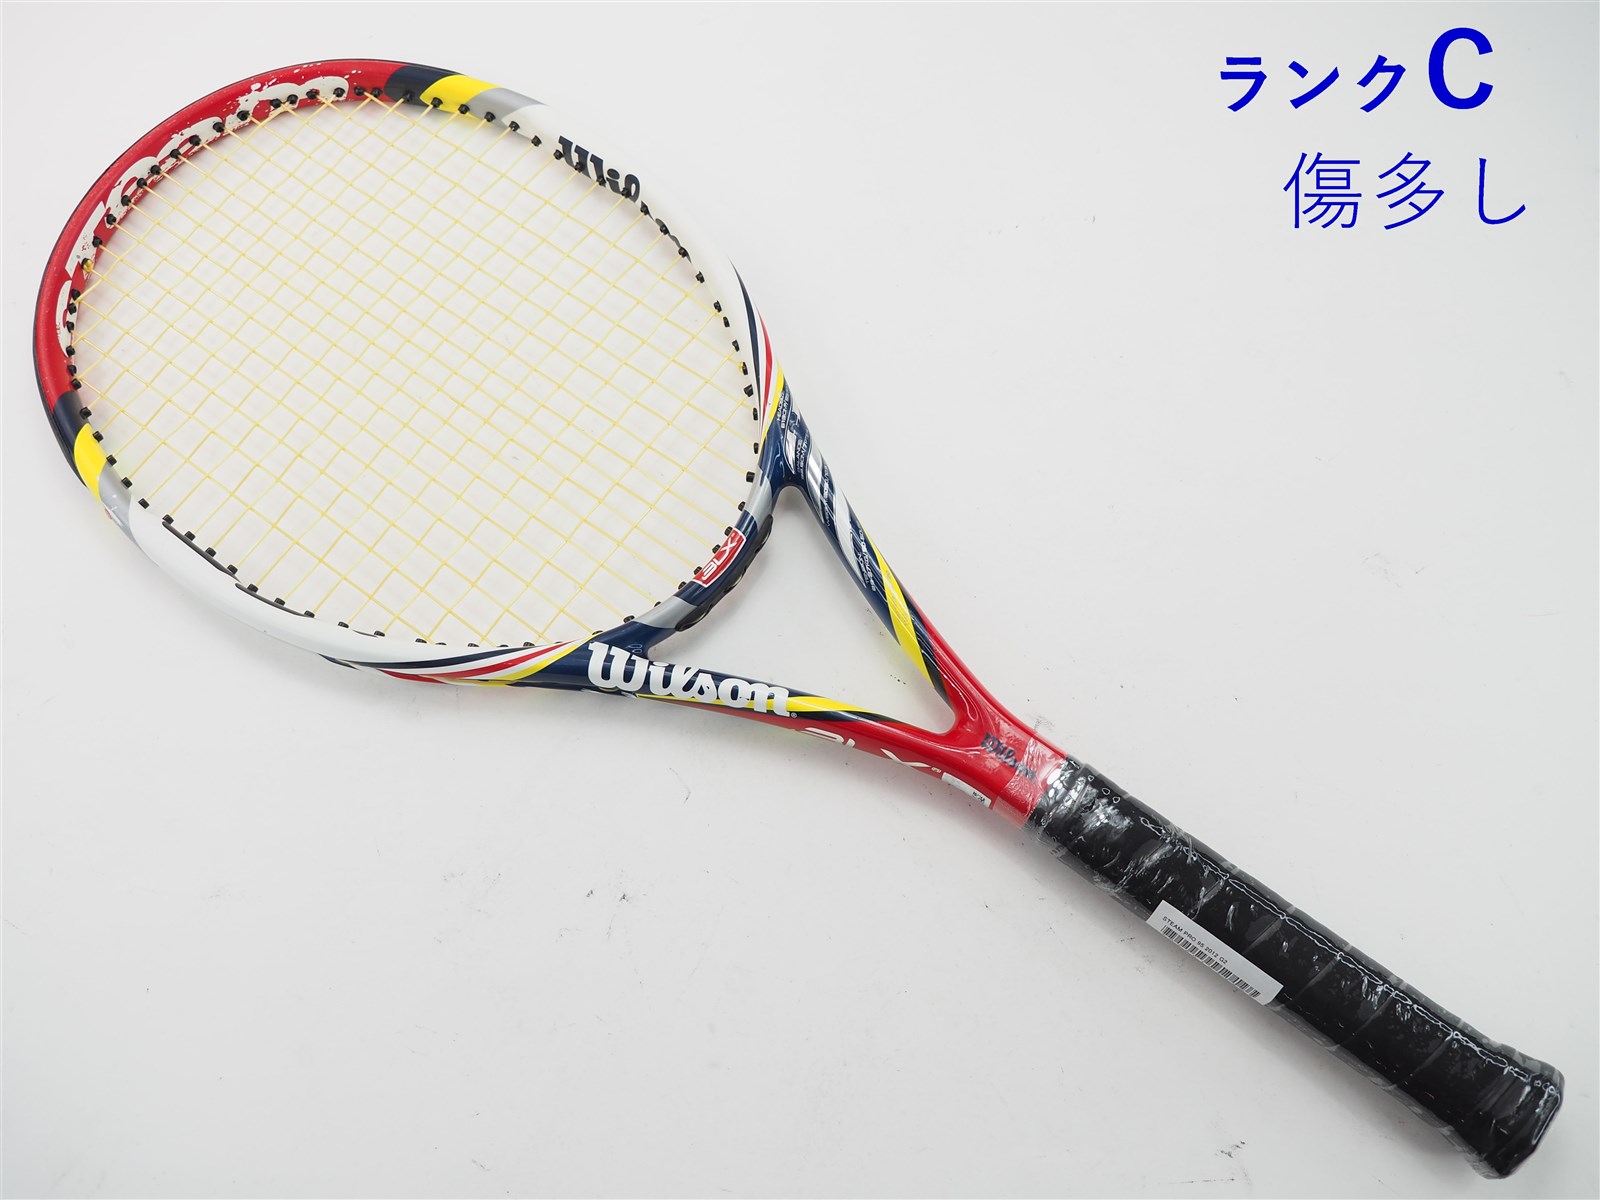 テニスラケット ウィルソン スティーム 95 2014年モデル【トップバンパー割れ有り】 (L2)WILSON STEAM 95 2014